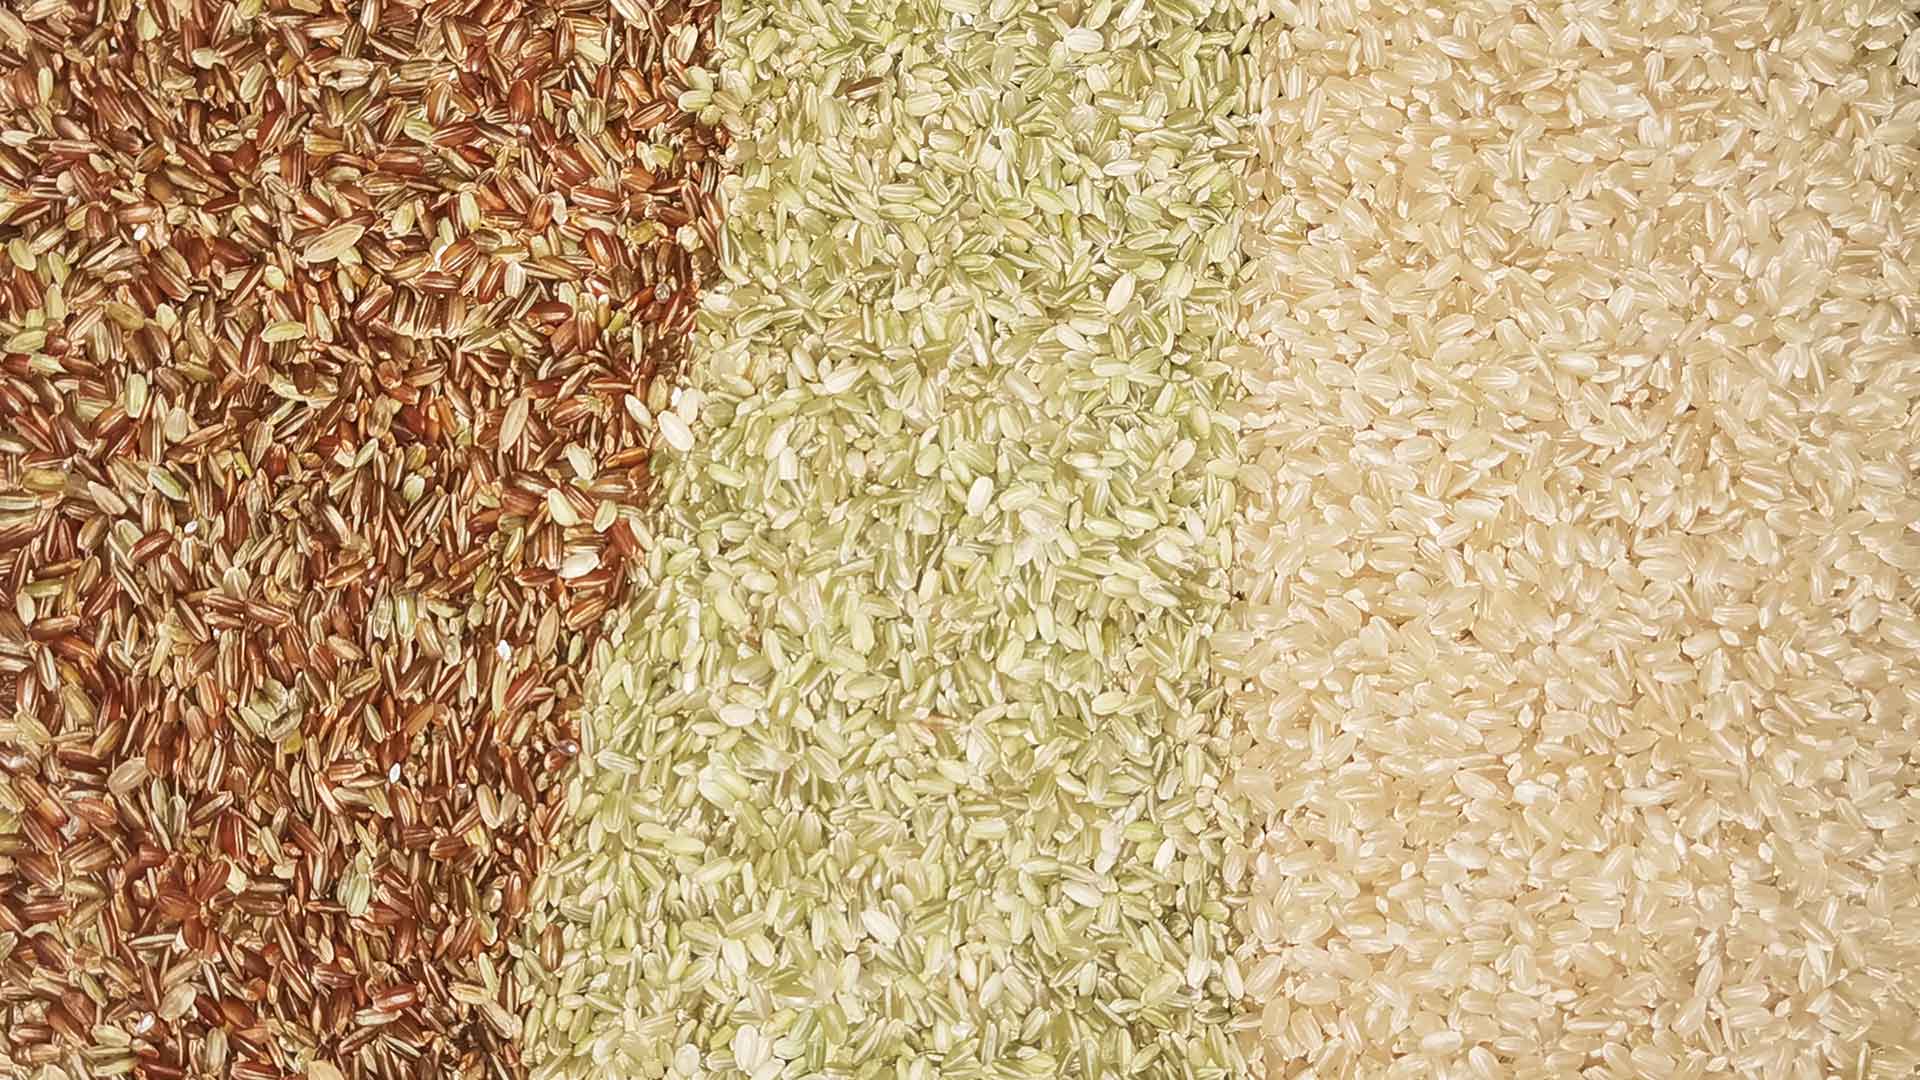 clasificación de arroz